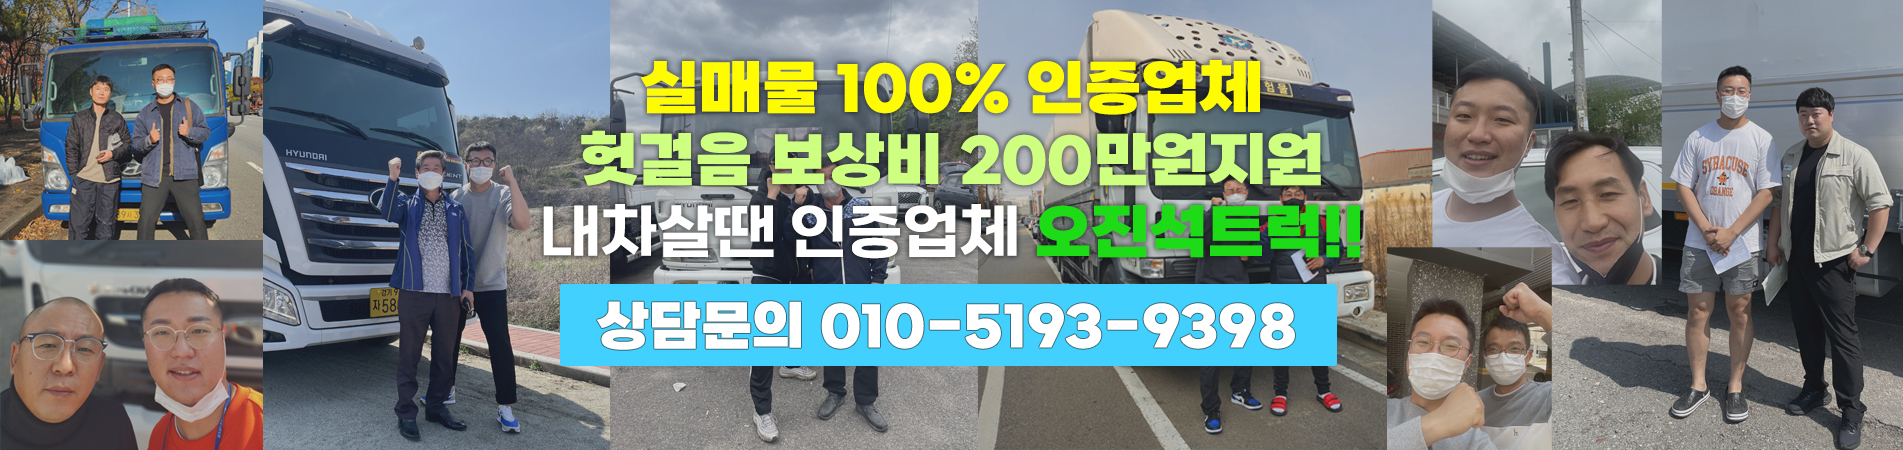 실매물 100% 인증업체 헛걸음 보상비 200만원 지원 내차살땐 인증업체 오진석트럭!!